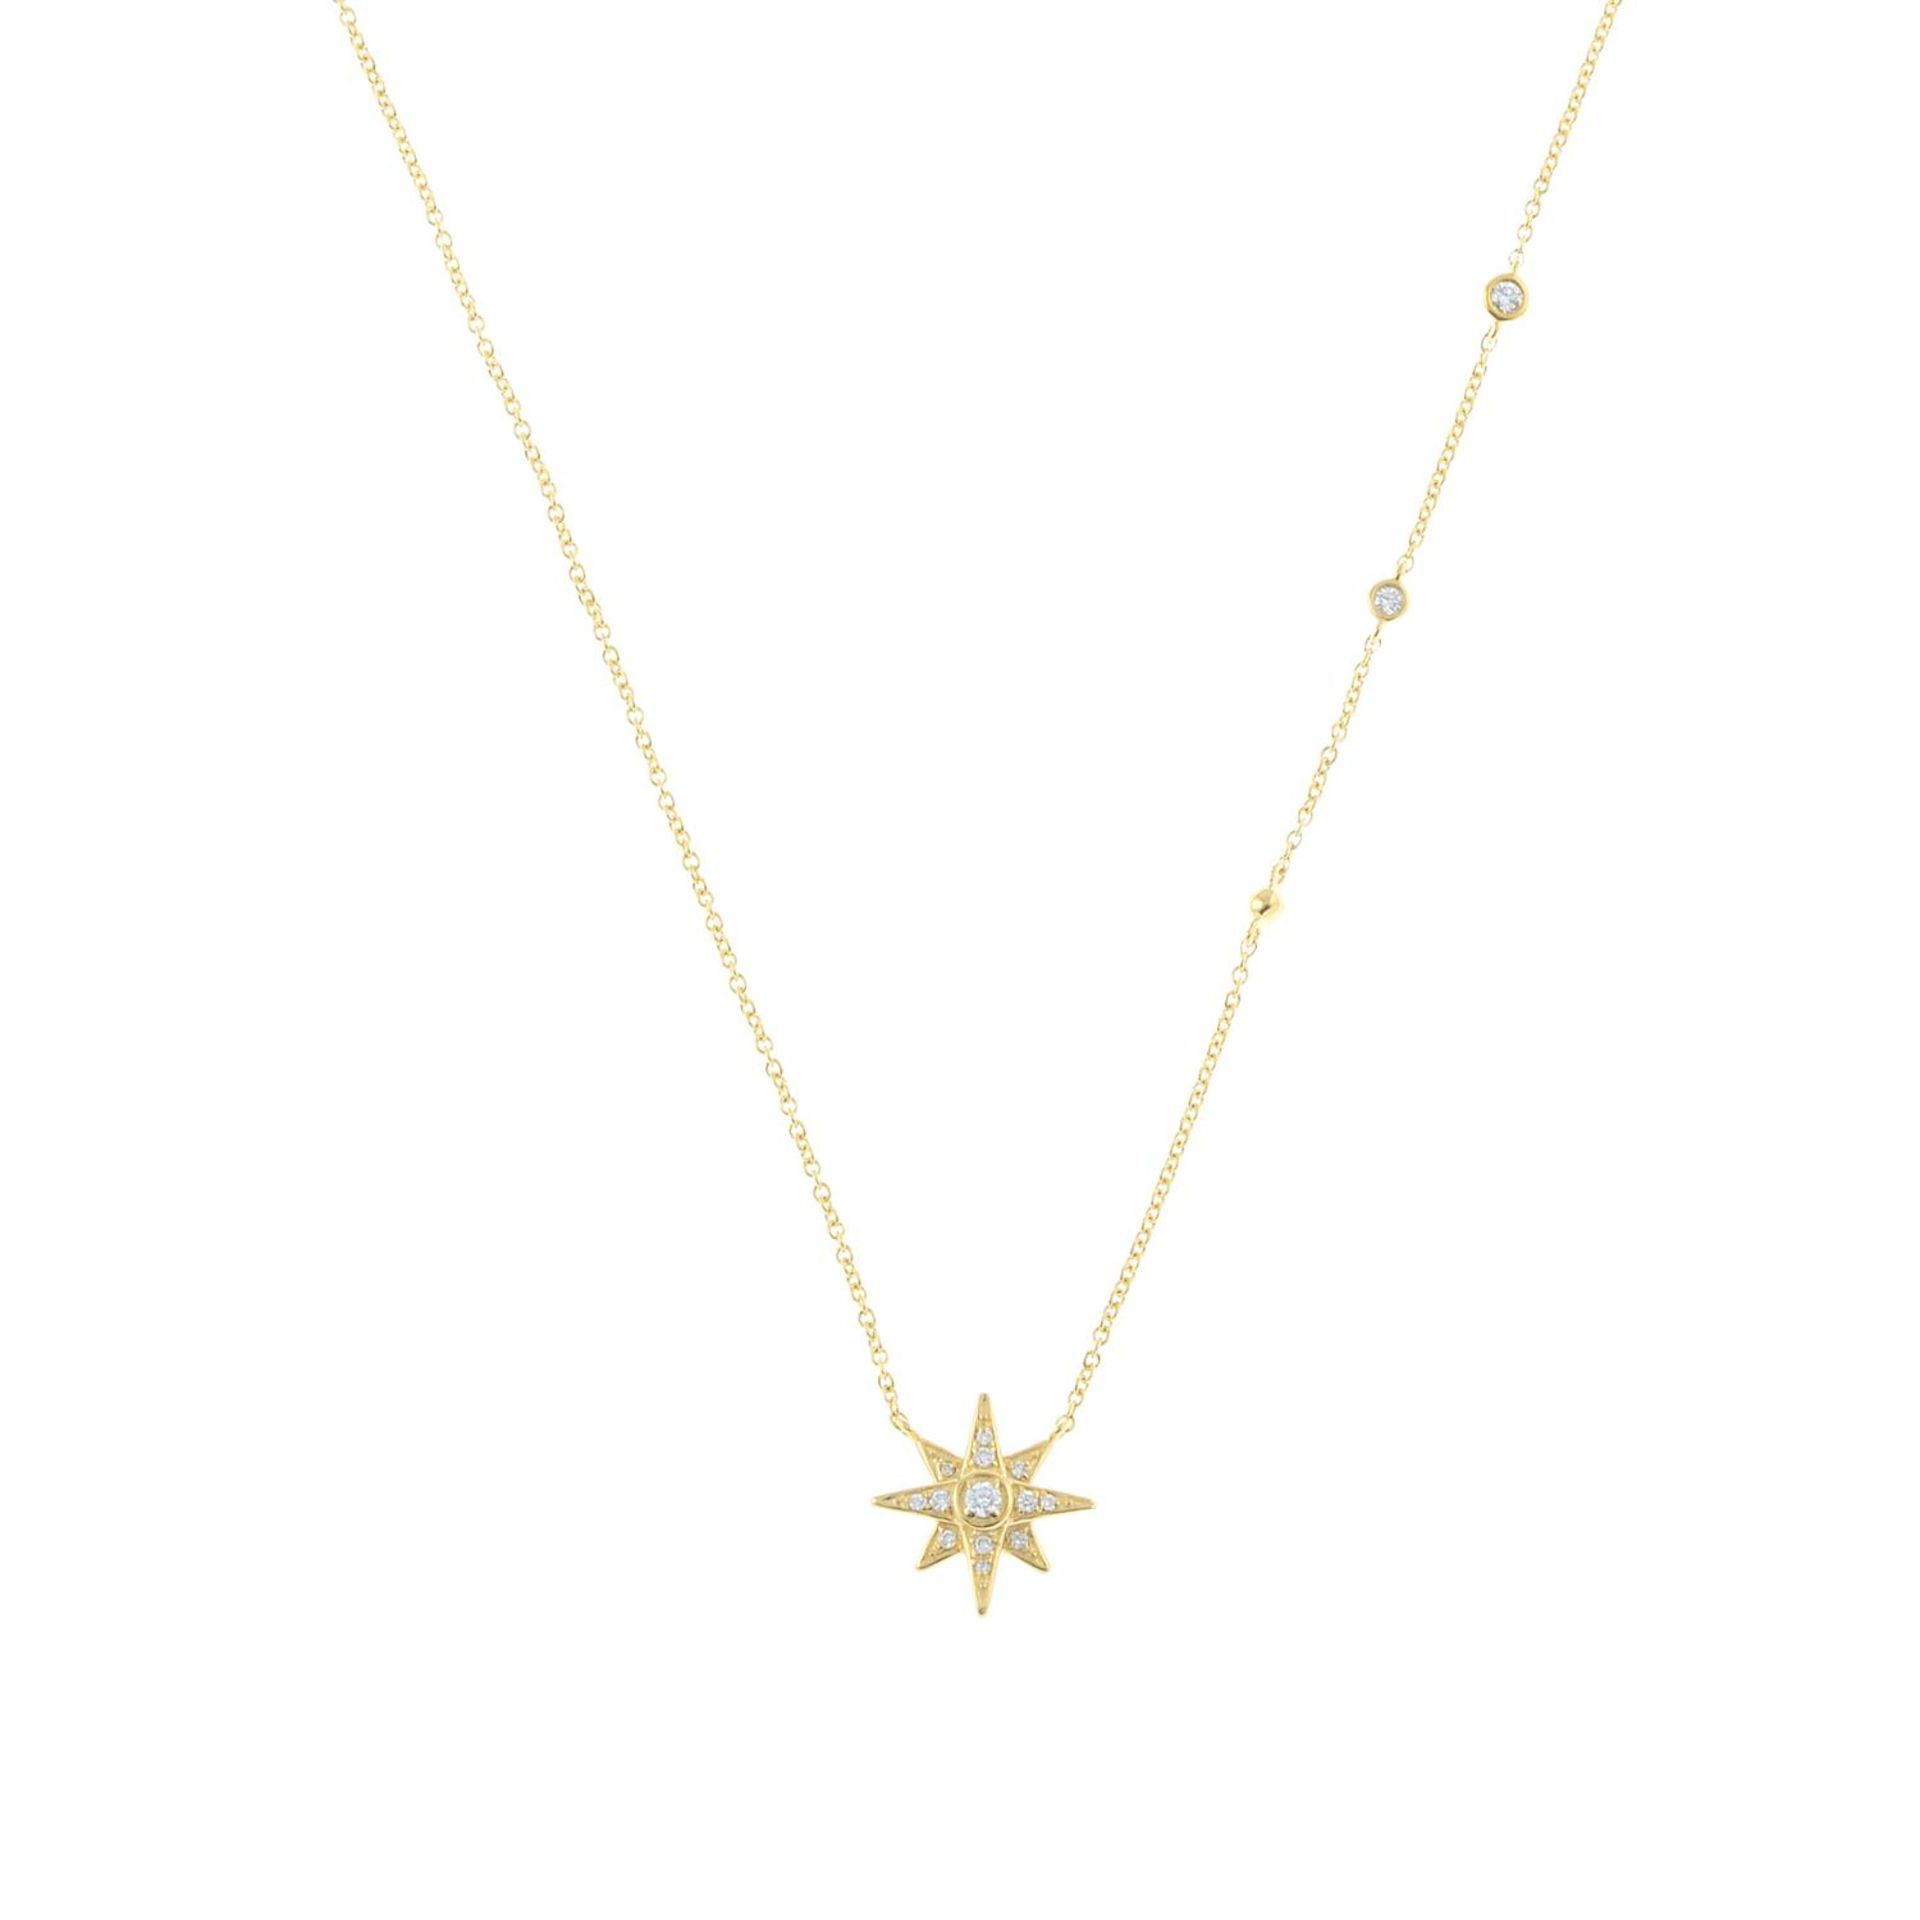 A trace-link necklace, with pave-set diamond start motif.